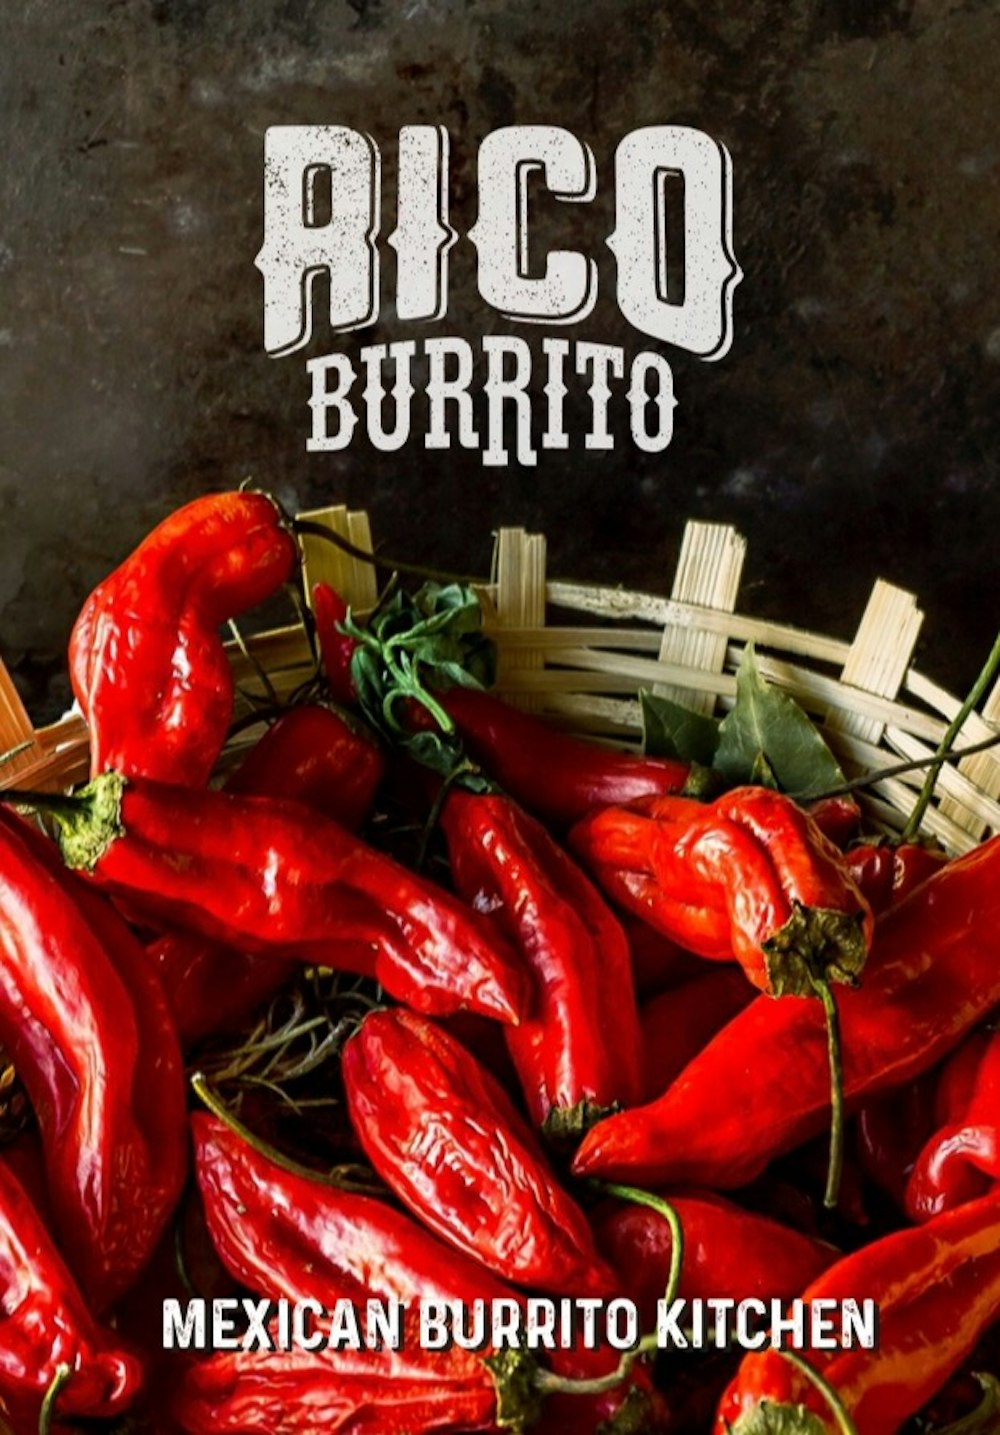 Hero image for supplier Rico Burrito